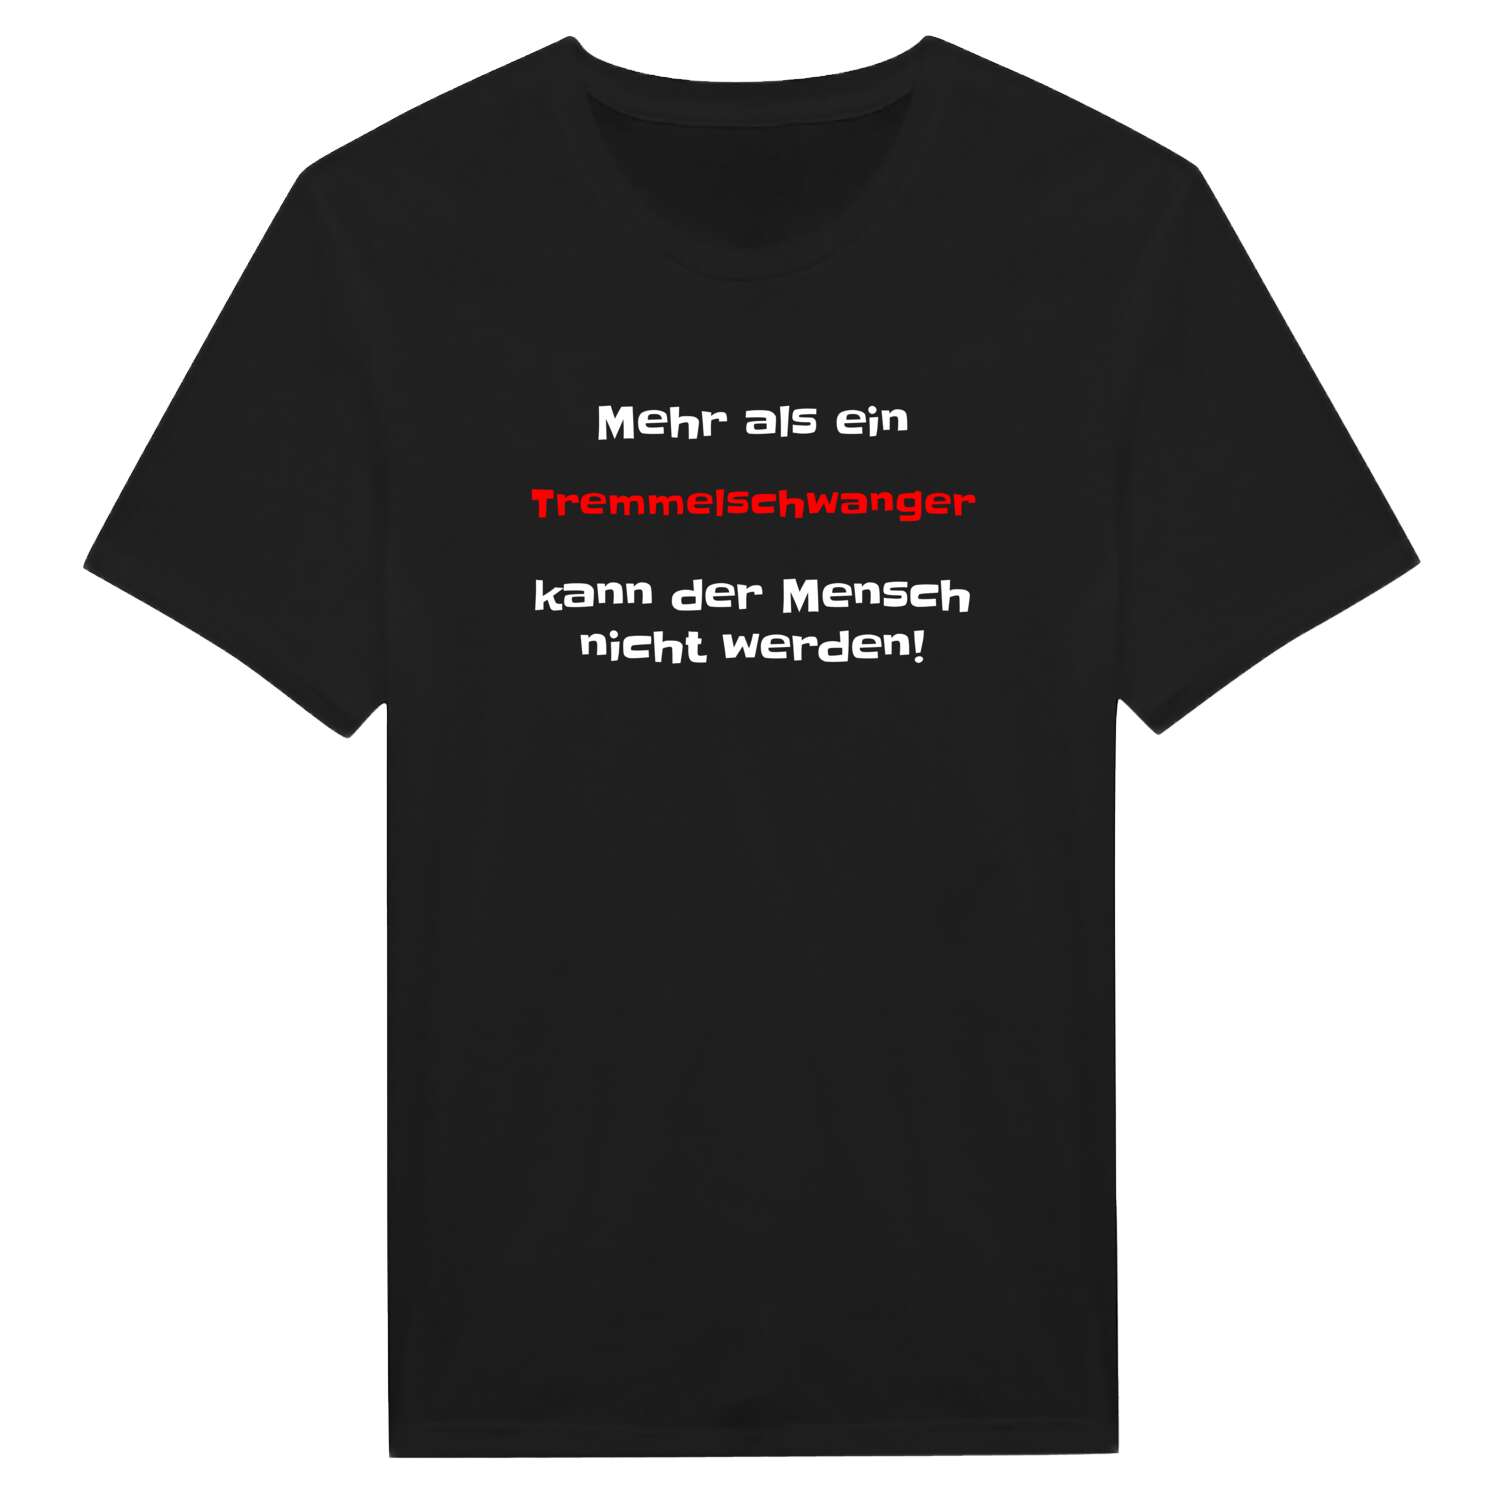 Tremmelschwang T-Shirt »Mehr als ein«